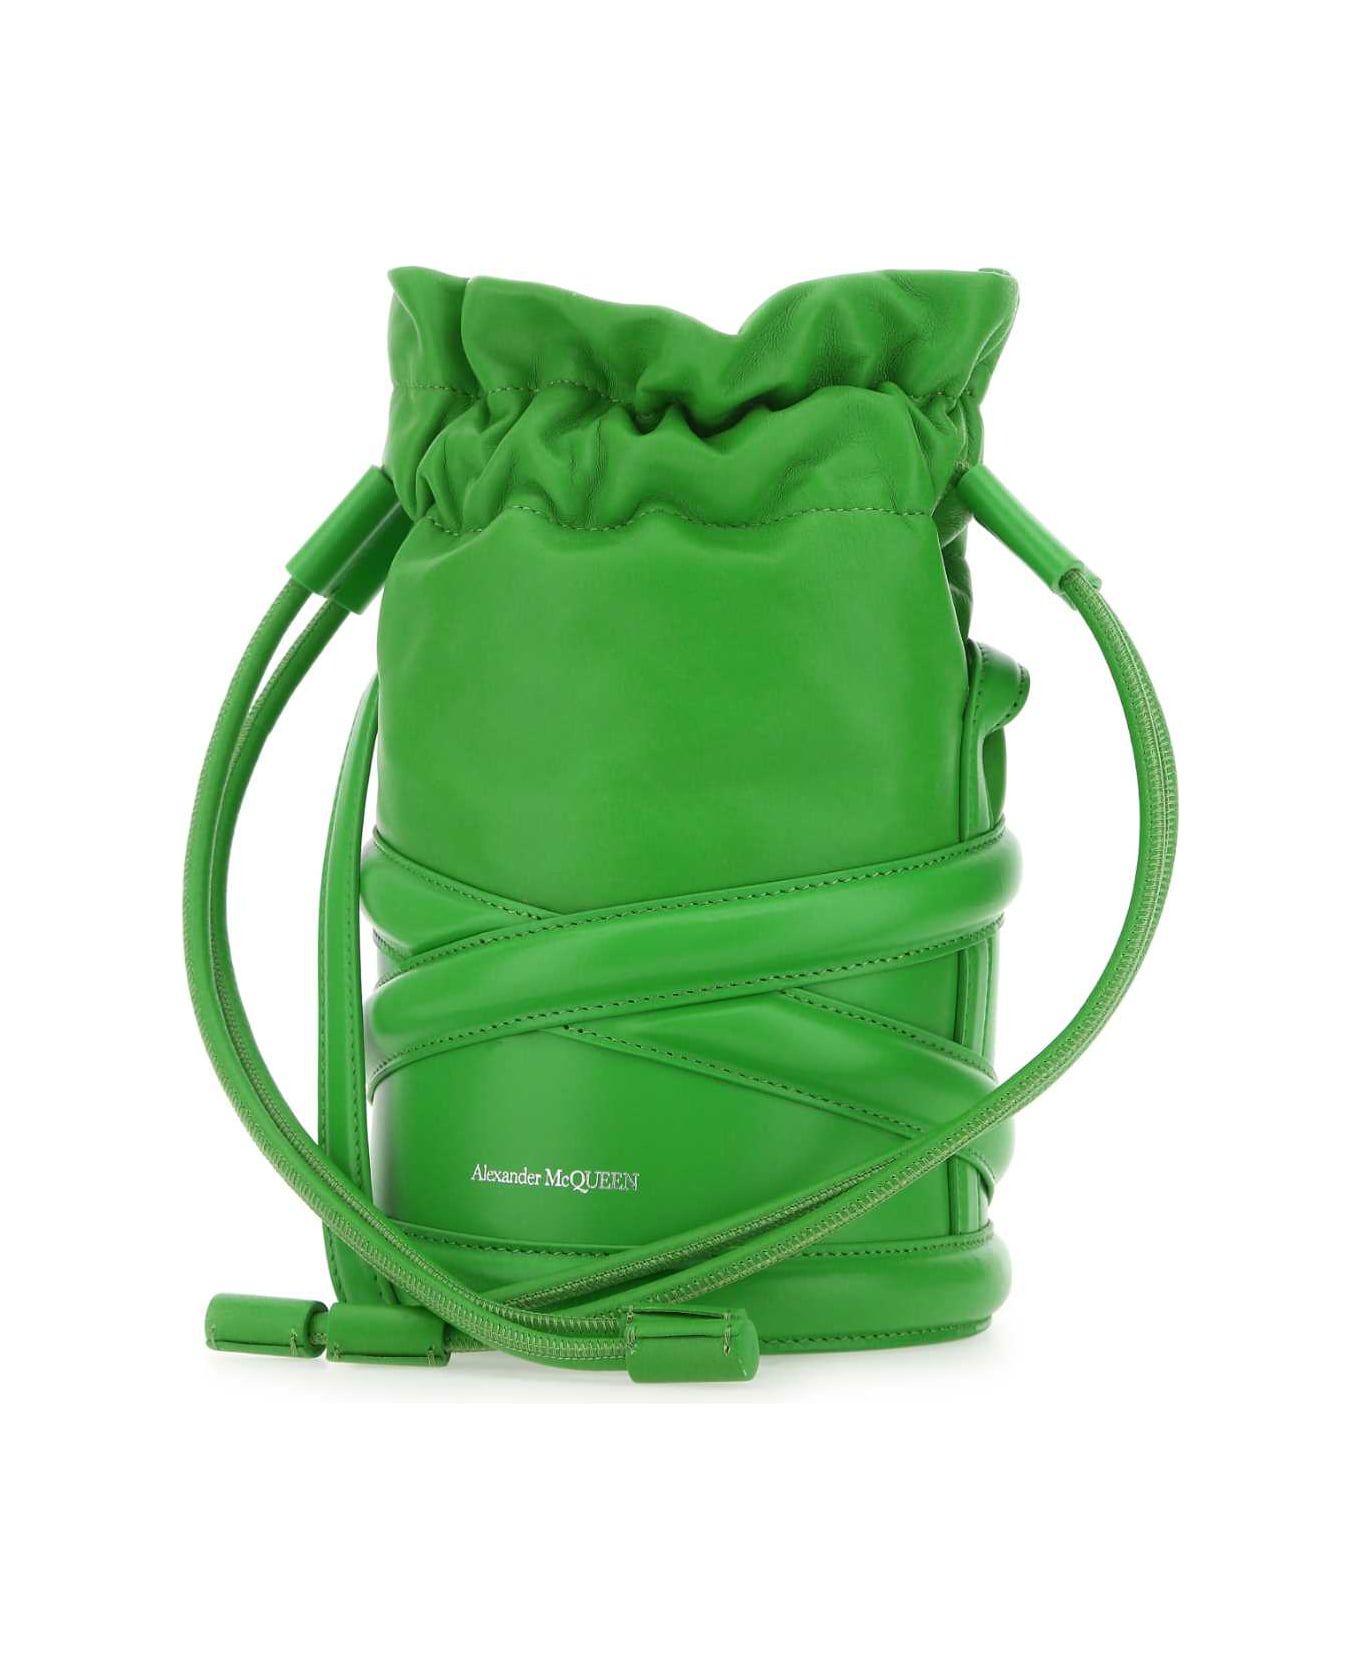 Alexander McQueen Grass Green Leather Bucket Bag - 3800 トートバッグ